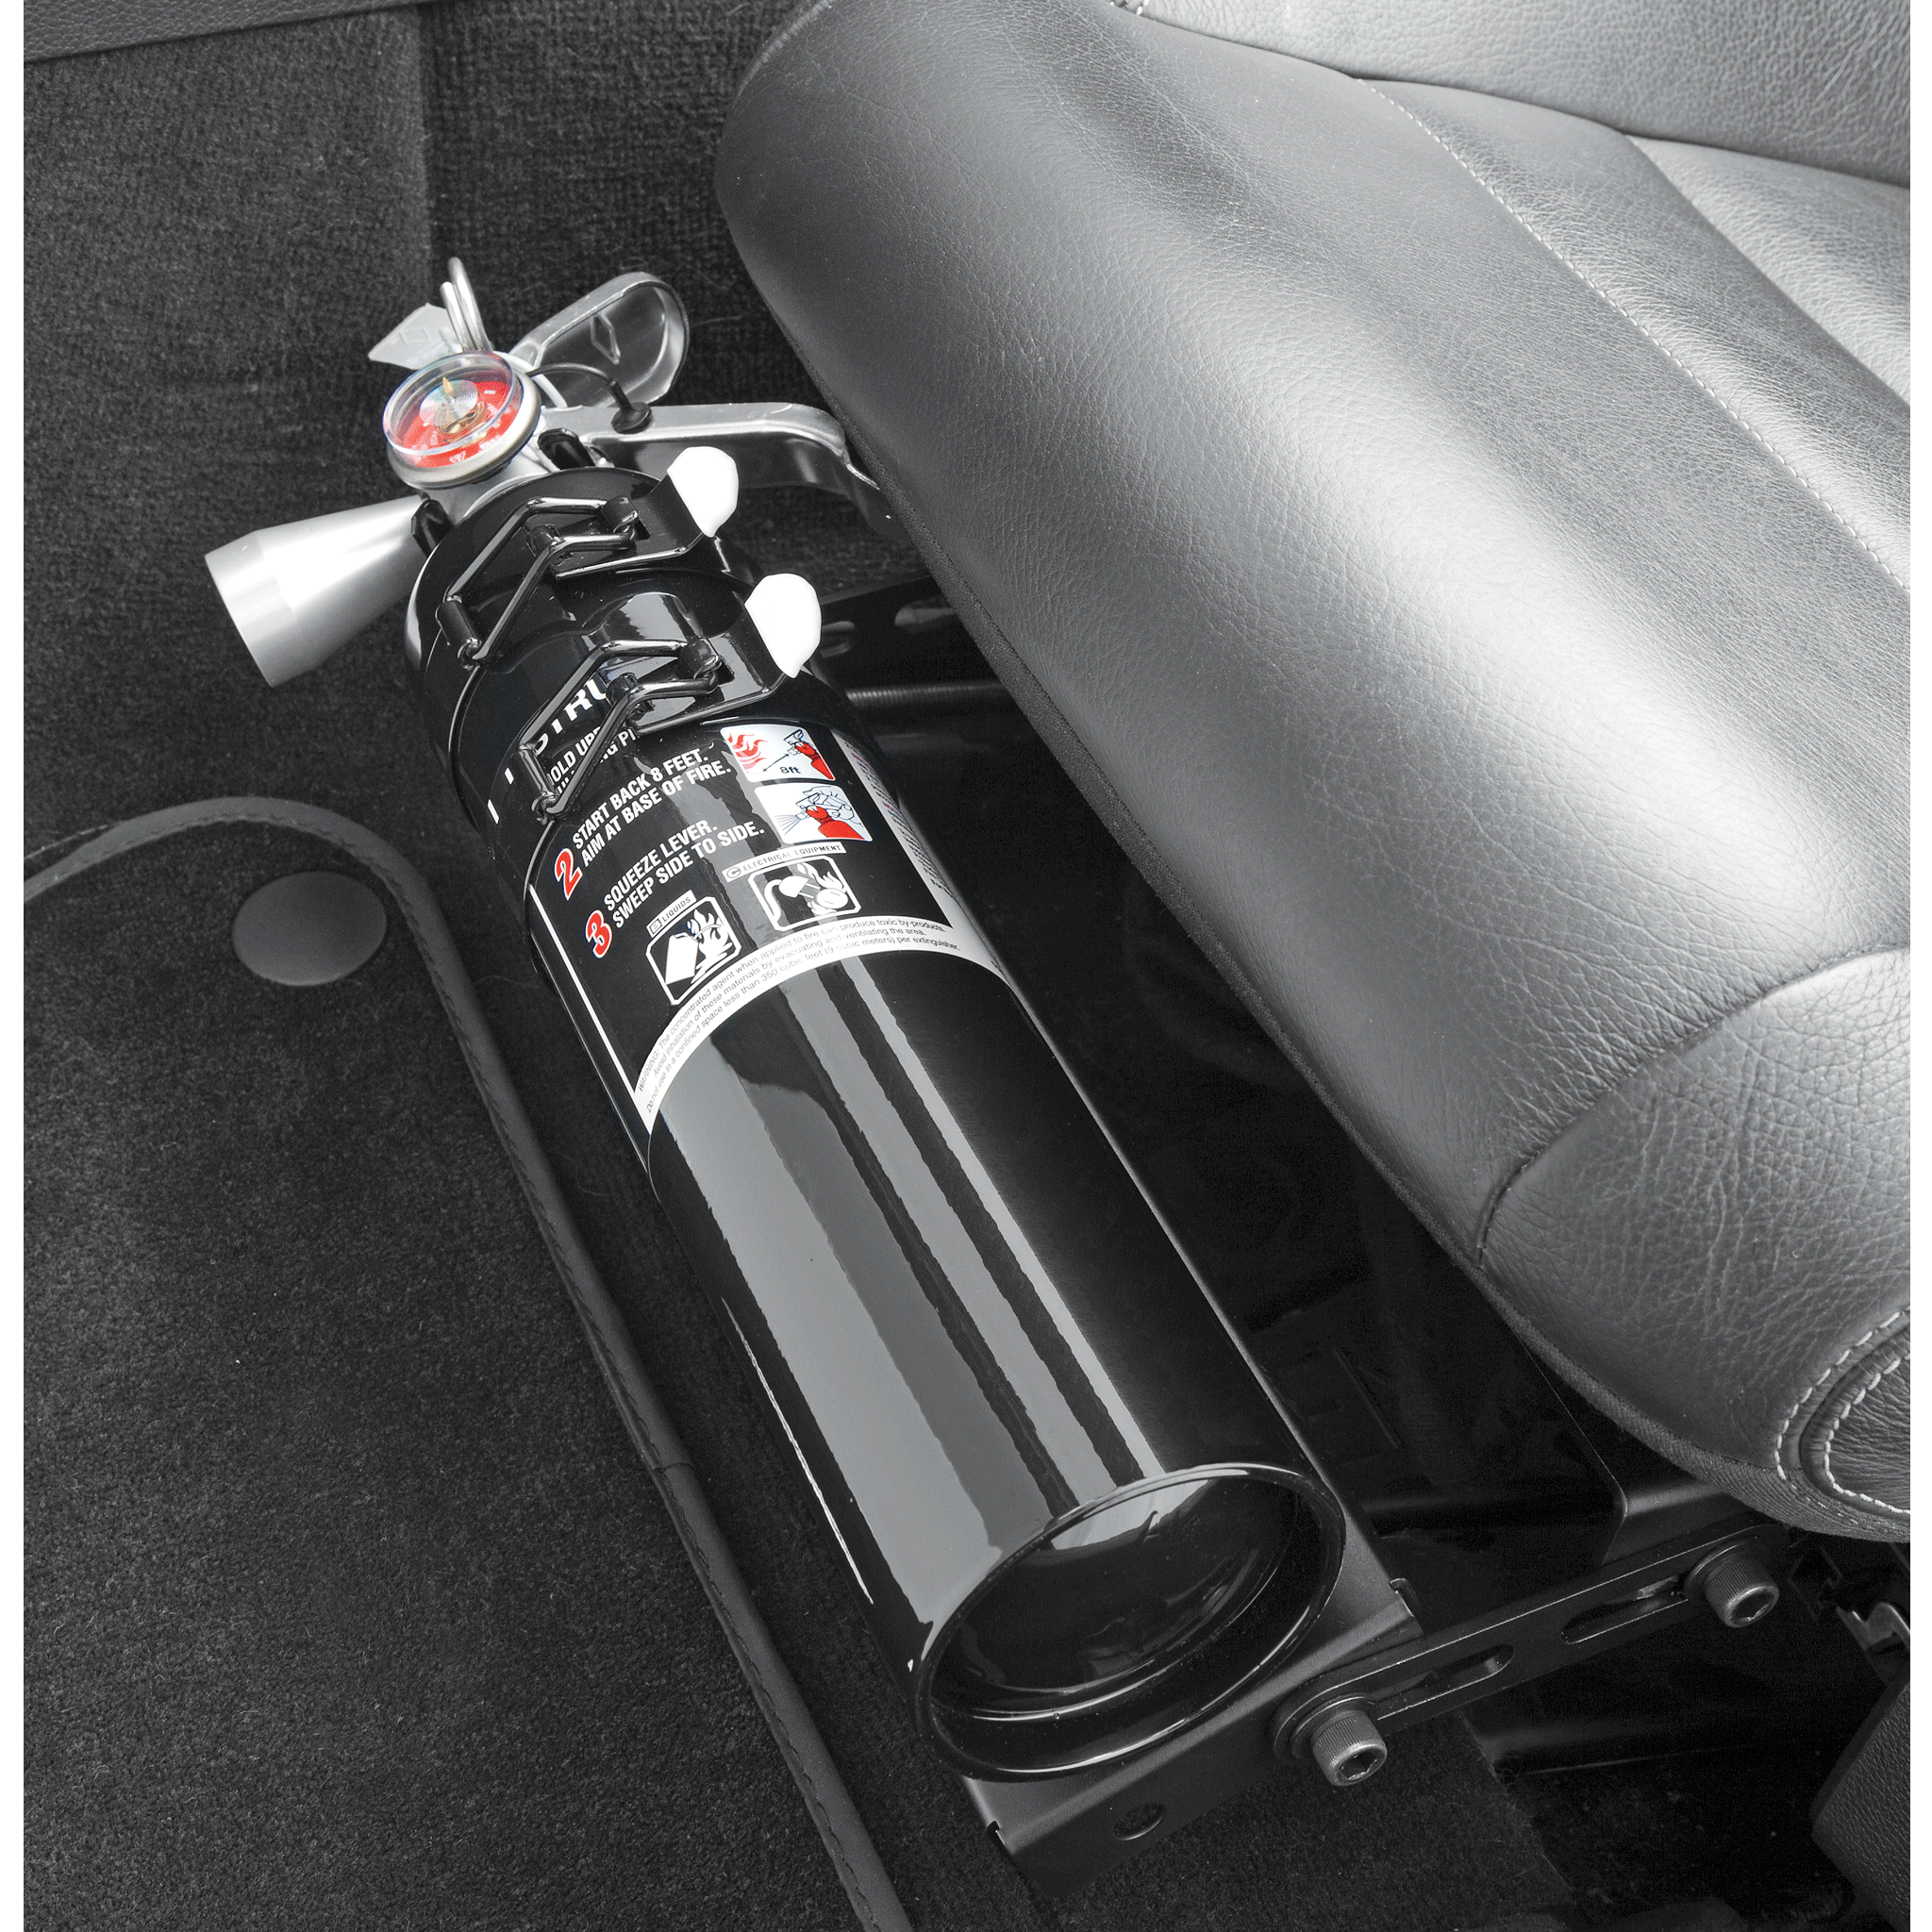 HalGuard Clean Agent Car Fire Extinguisher - 5.0 lb.